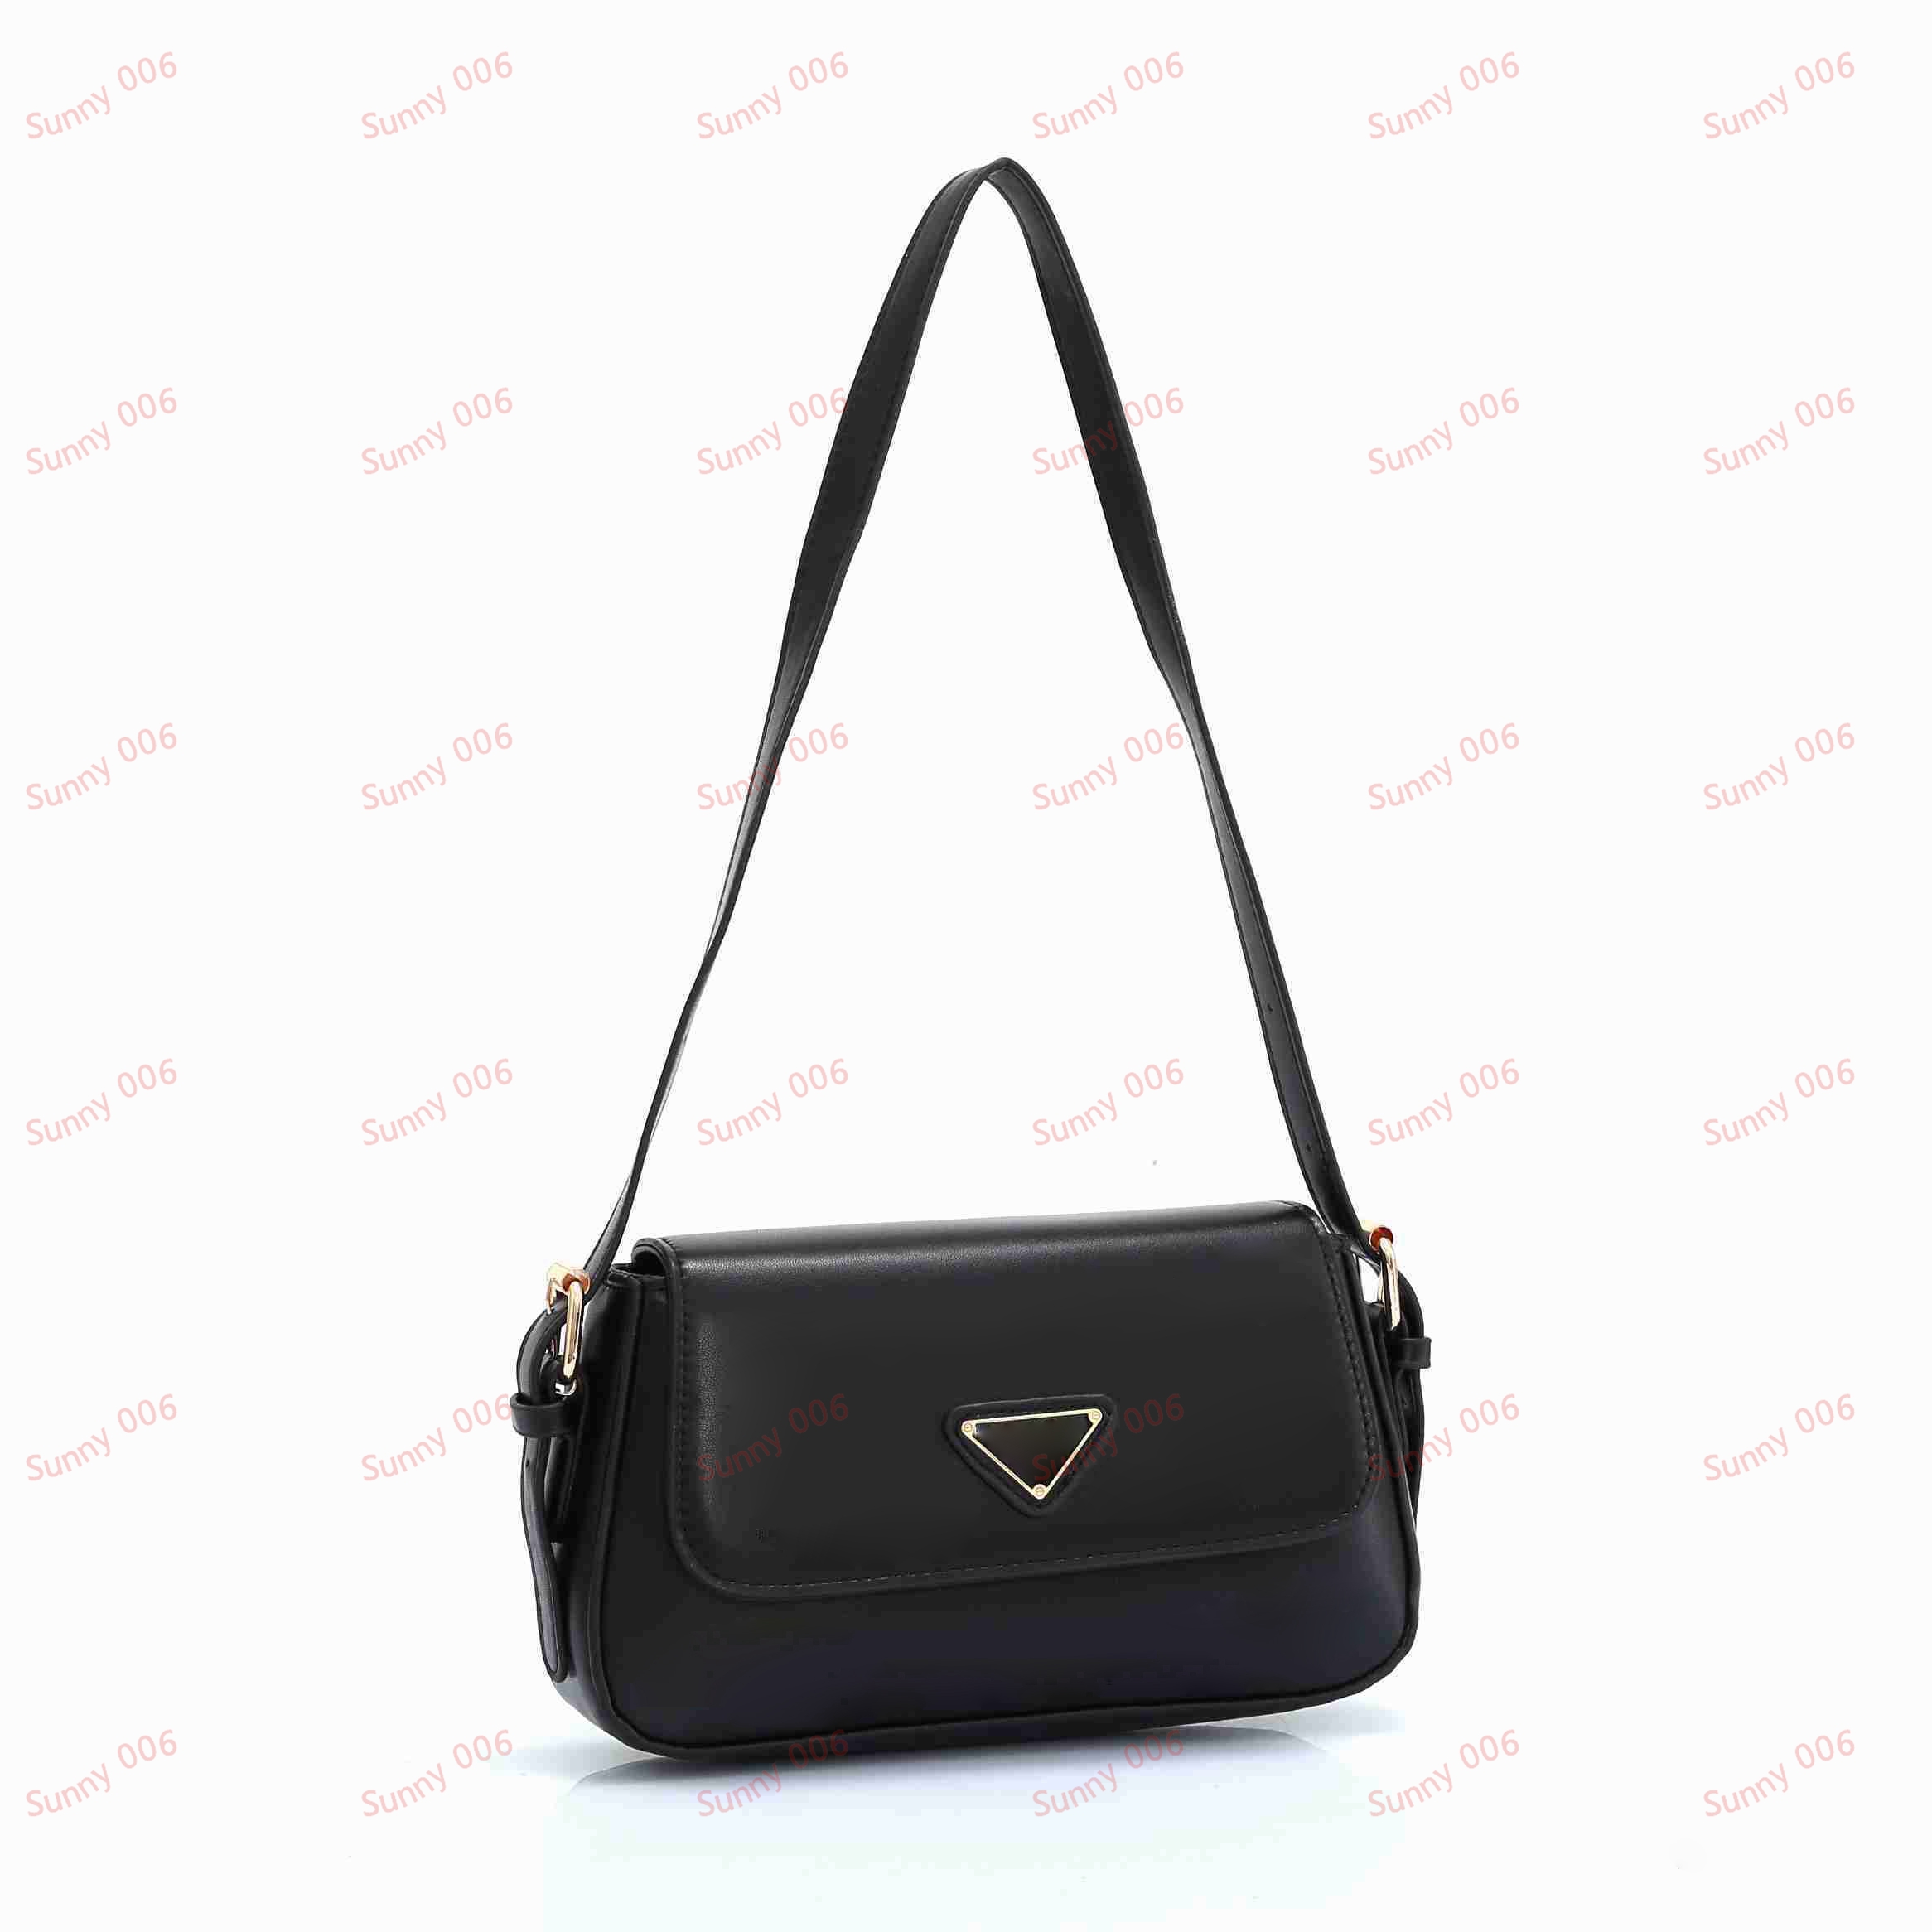 Yaz çok yönlü çapraz vücut çantası moda trend crossover çanta lüks uzun omuz sırt çantası tasarımcısı romantik hediye cüzdan